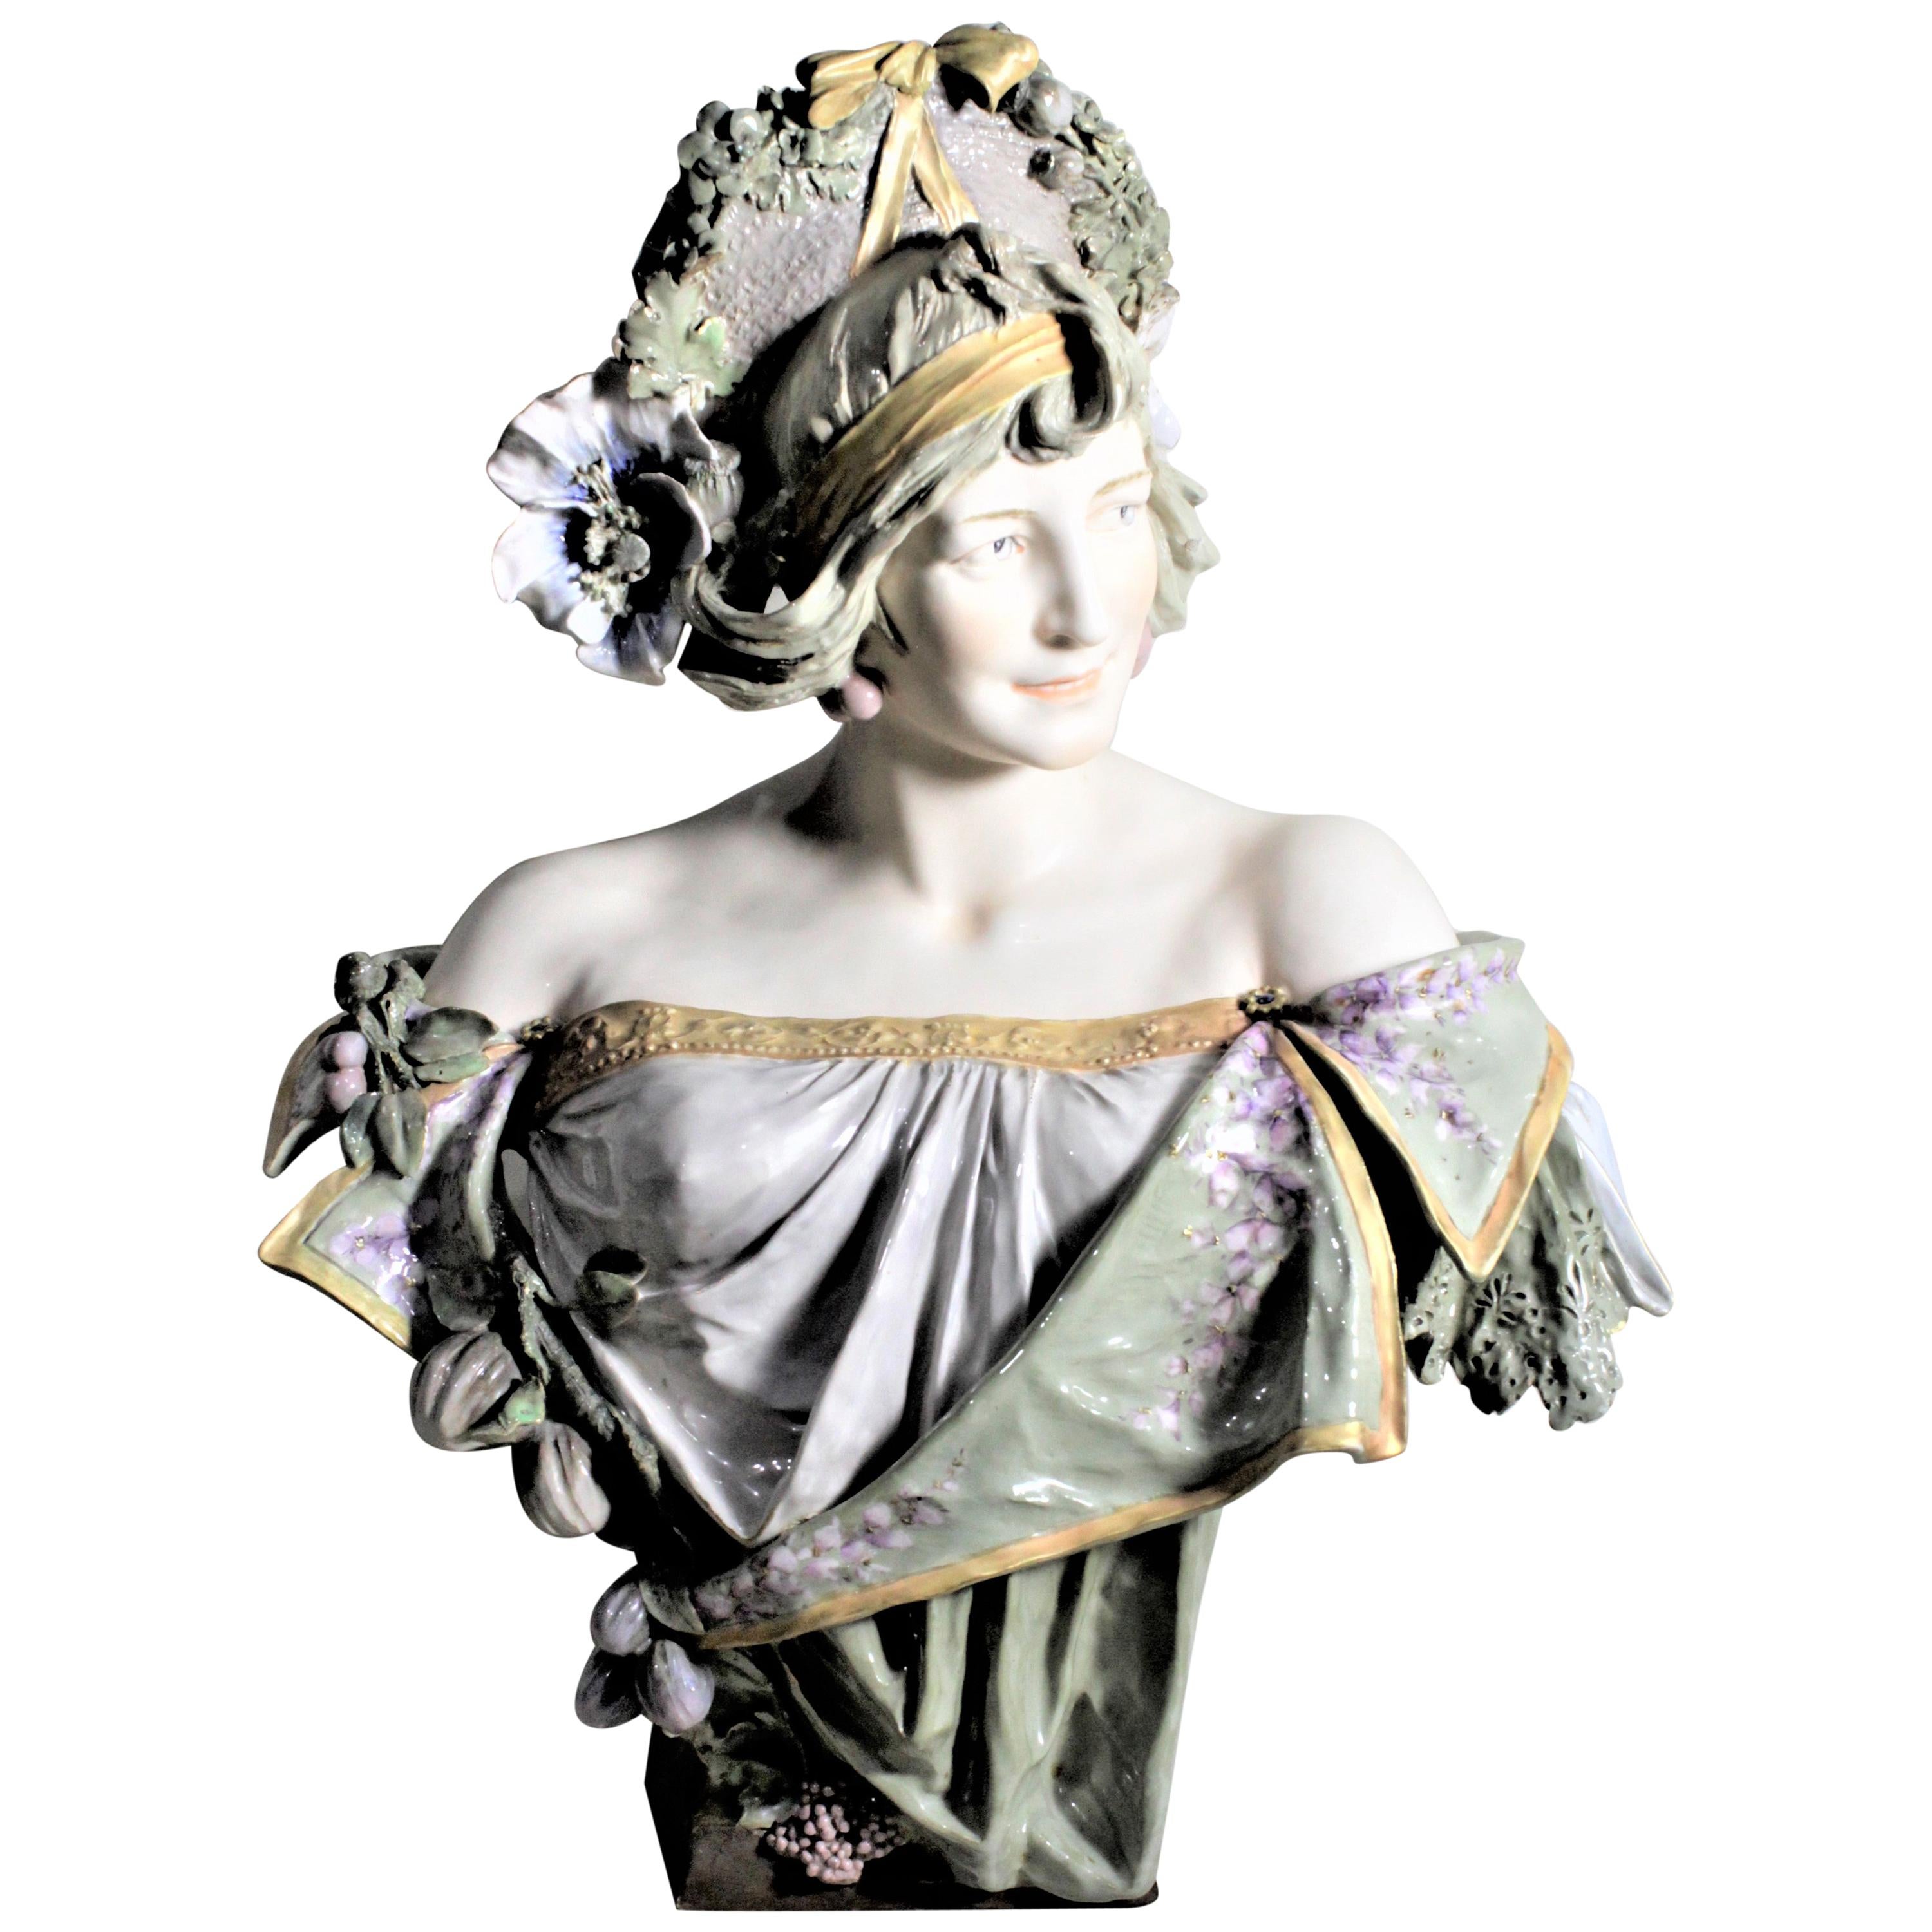 Large Antique Art Nouveau Austrian Porcelain Female Sculpture or Bust